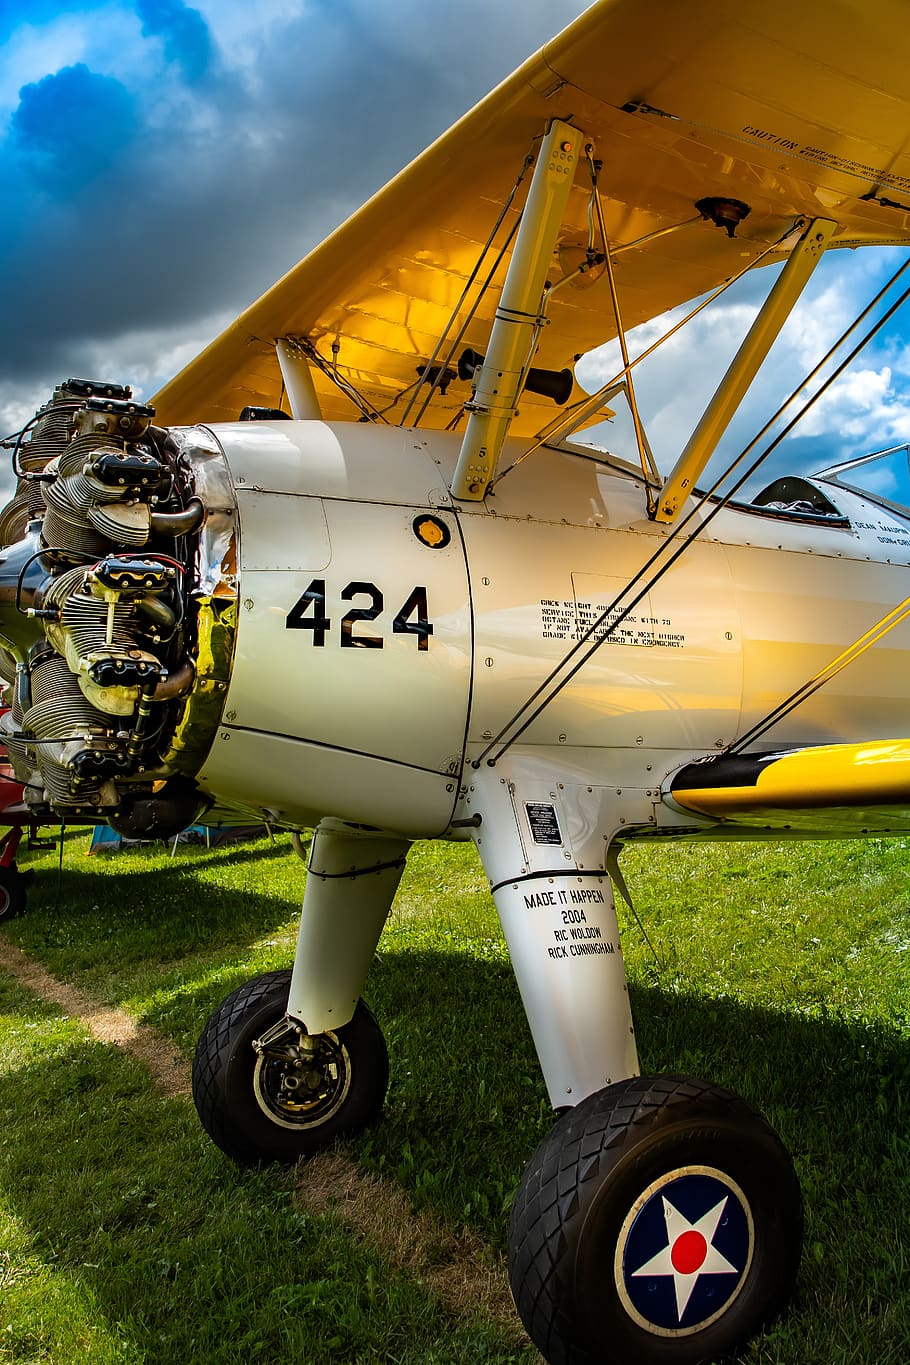 vintage, aviação, aeronaves, clássico, hélice, avião, voar, nostálgico, modo de transporte, dia